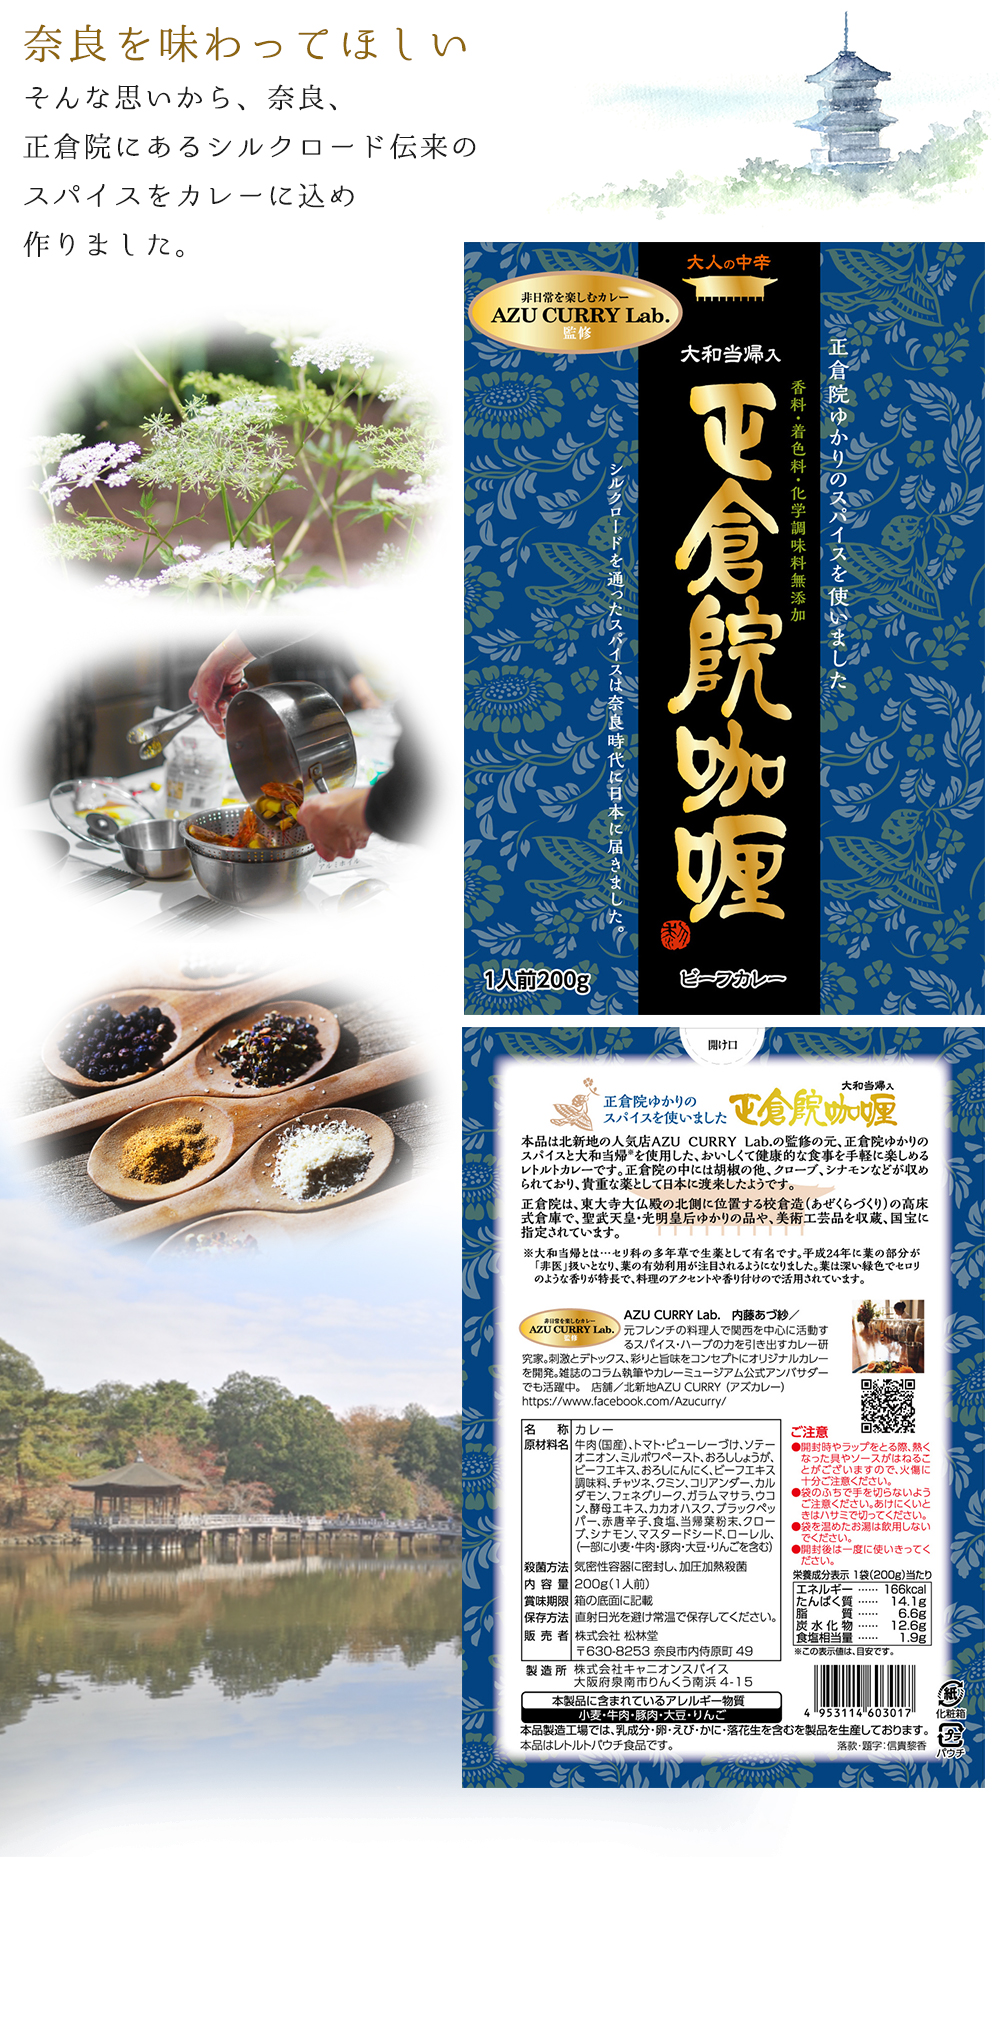 奈良を味わってほしいそんな思いから、奈良、正倉院にあるシルクロード伝来のスパイスをカレーに込め作りました。